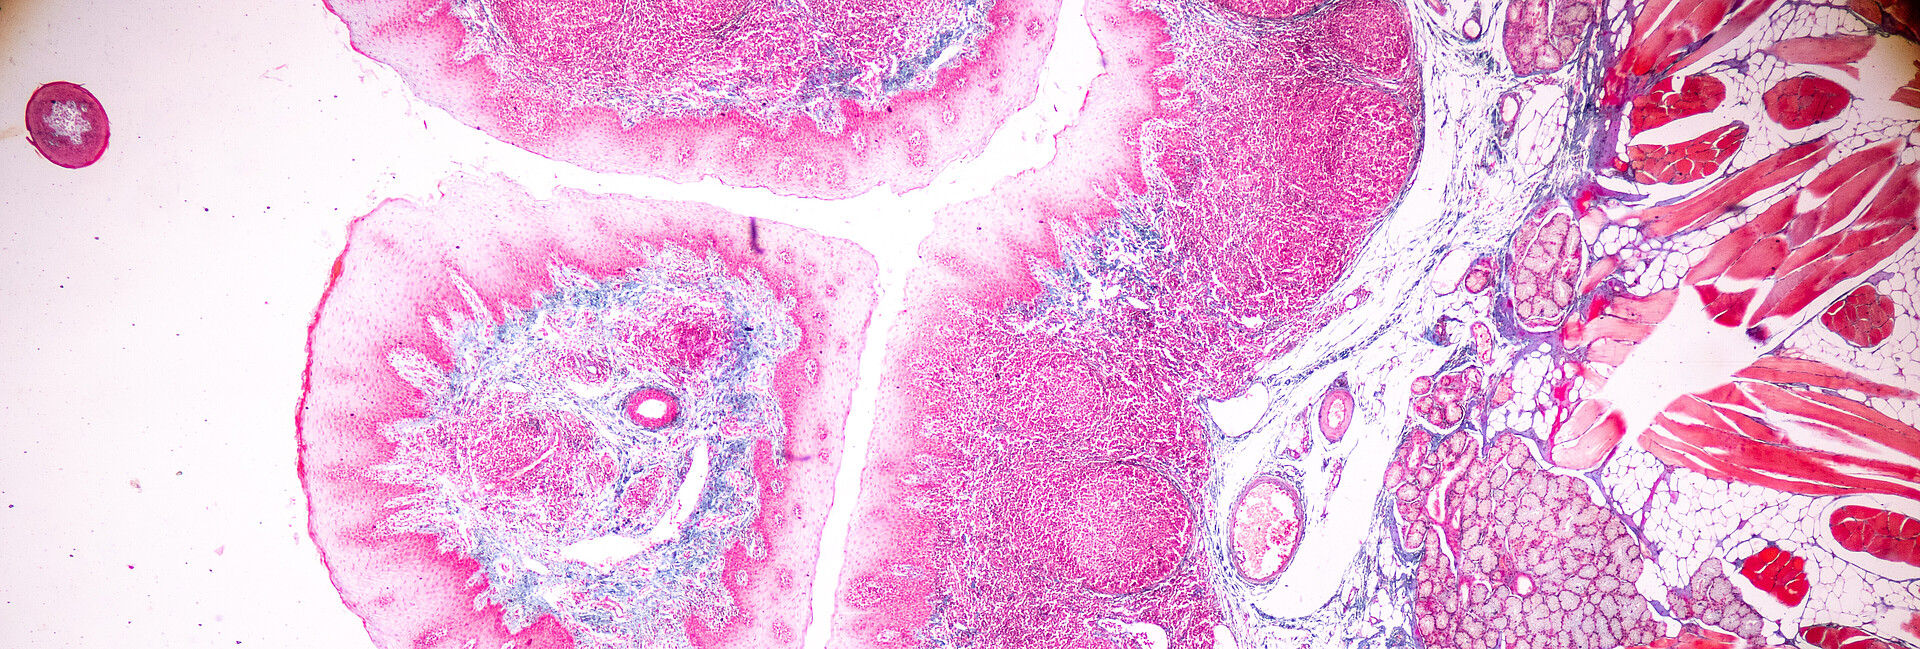 Menschliches Gewebe unter dem Mikroskop